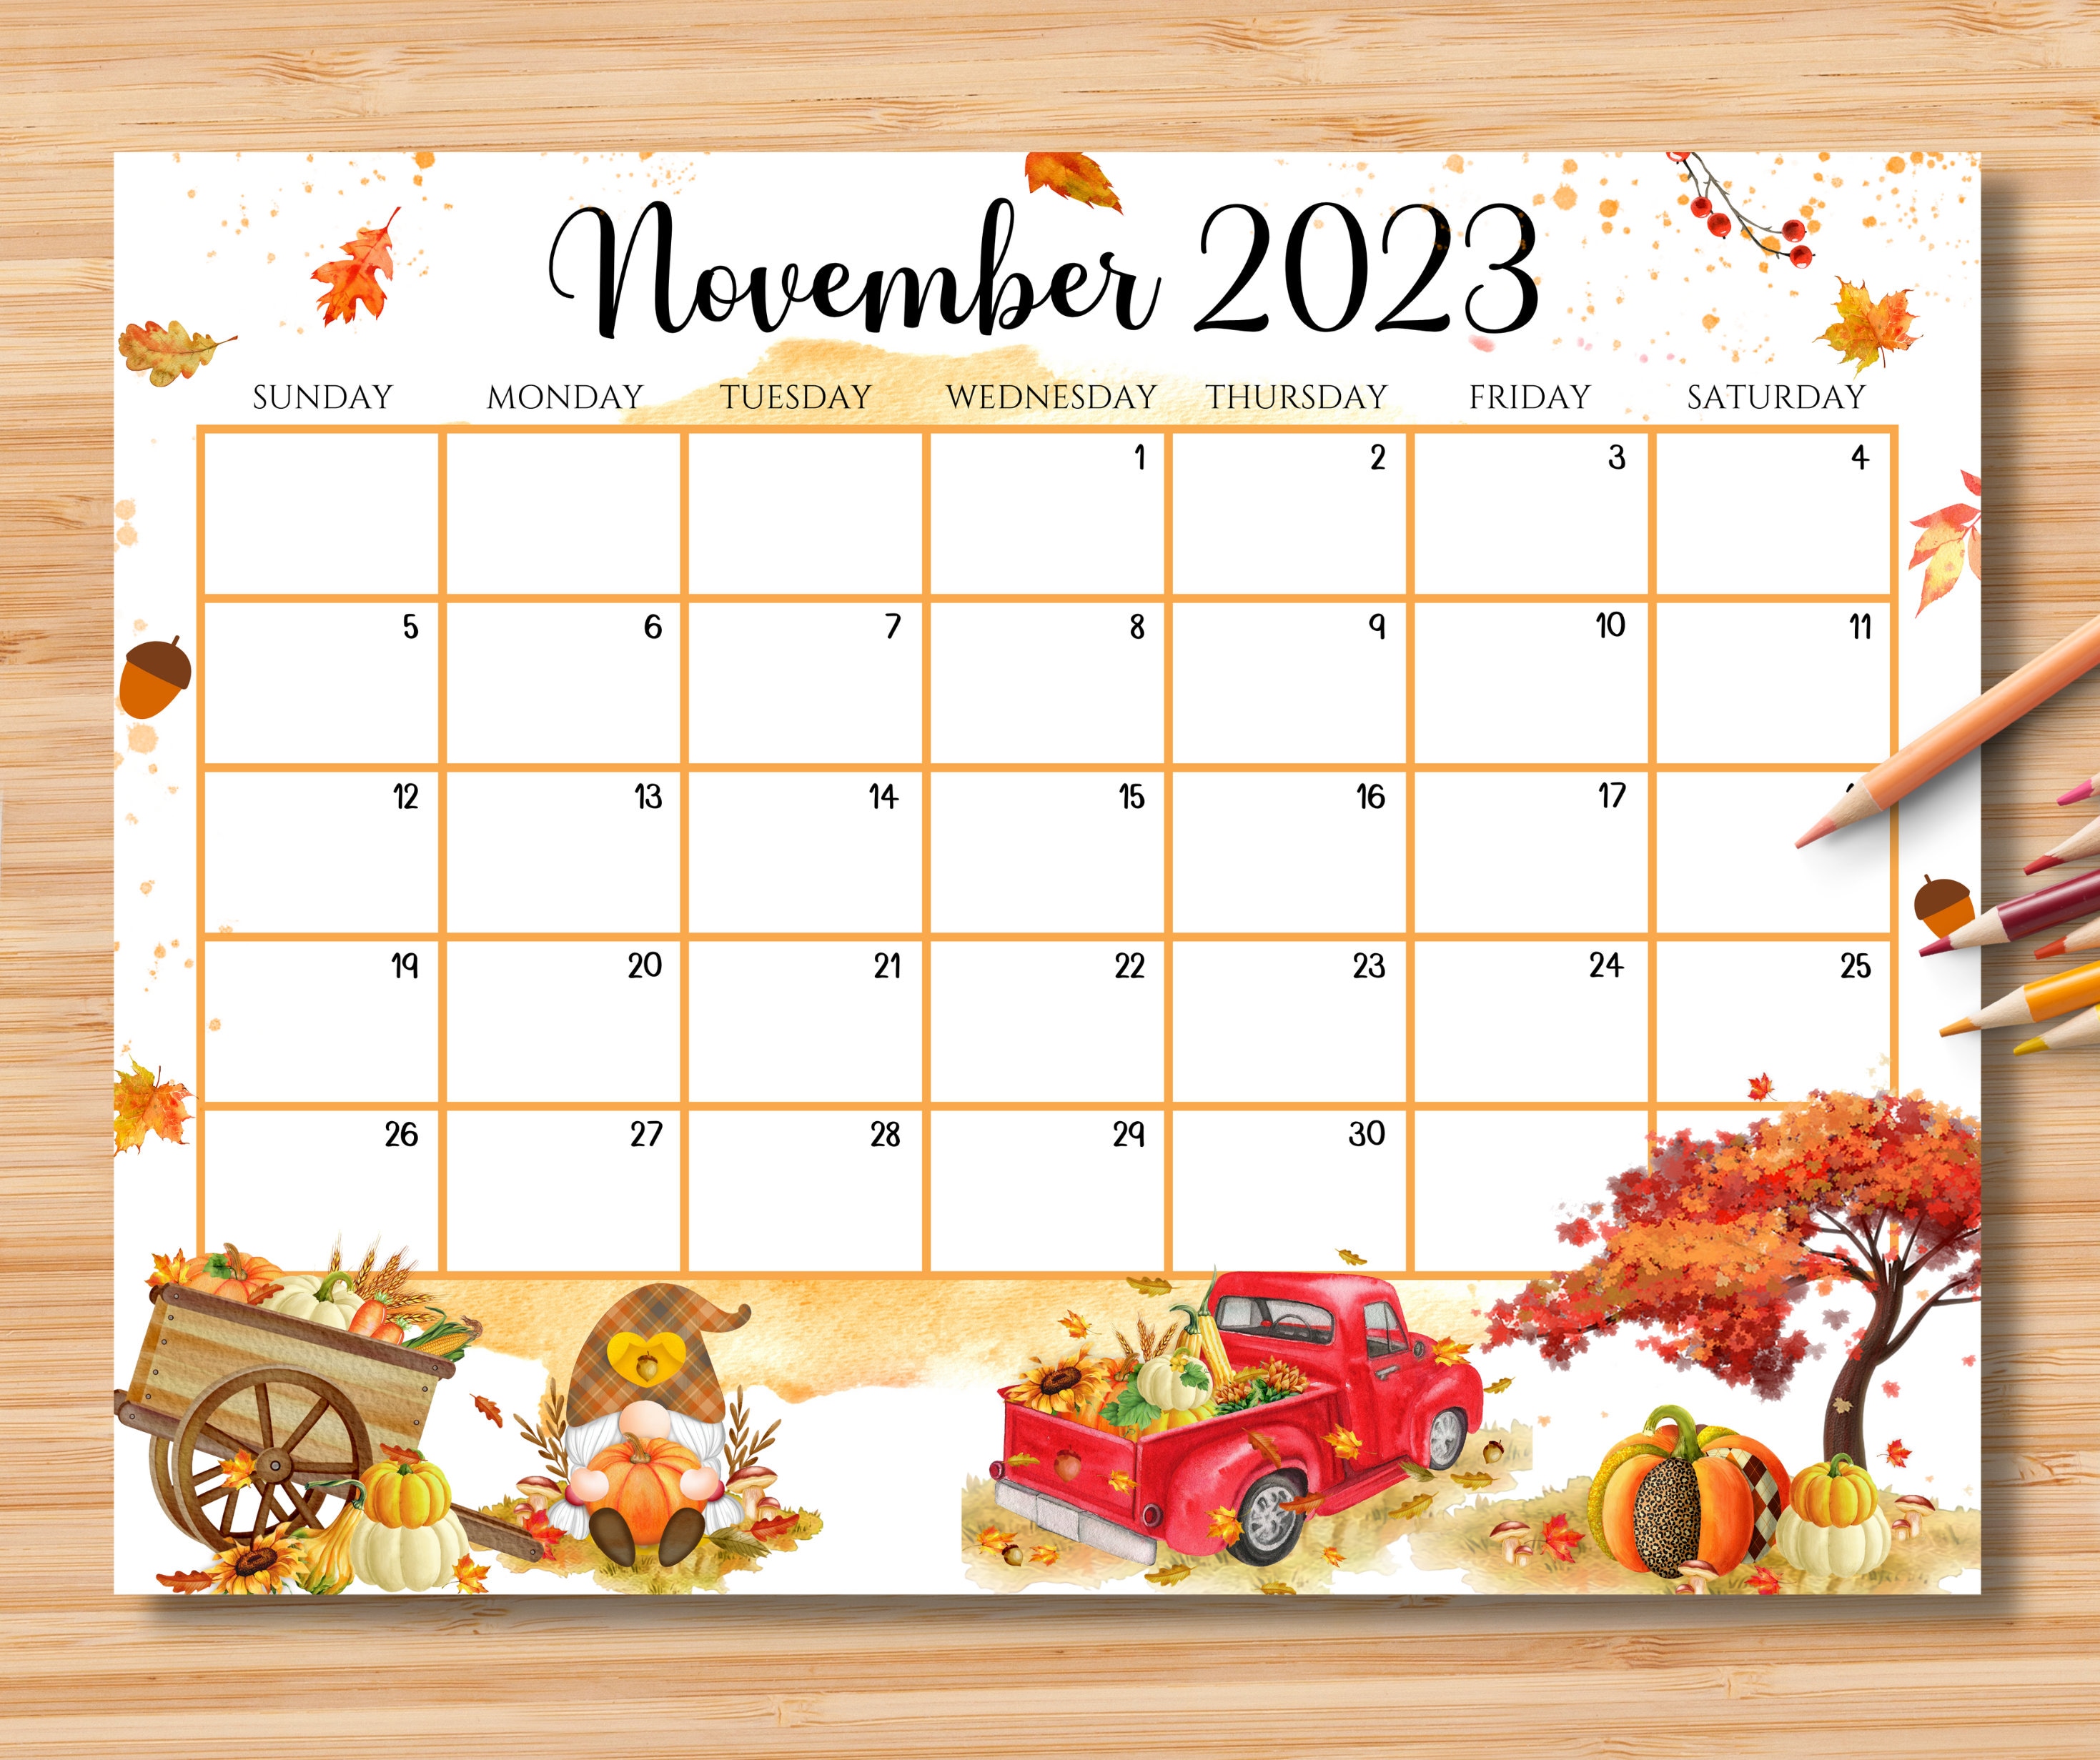 November 2023 Calendar Calendar Get Calendar 2023 Update